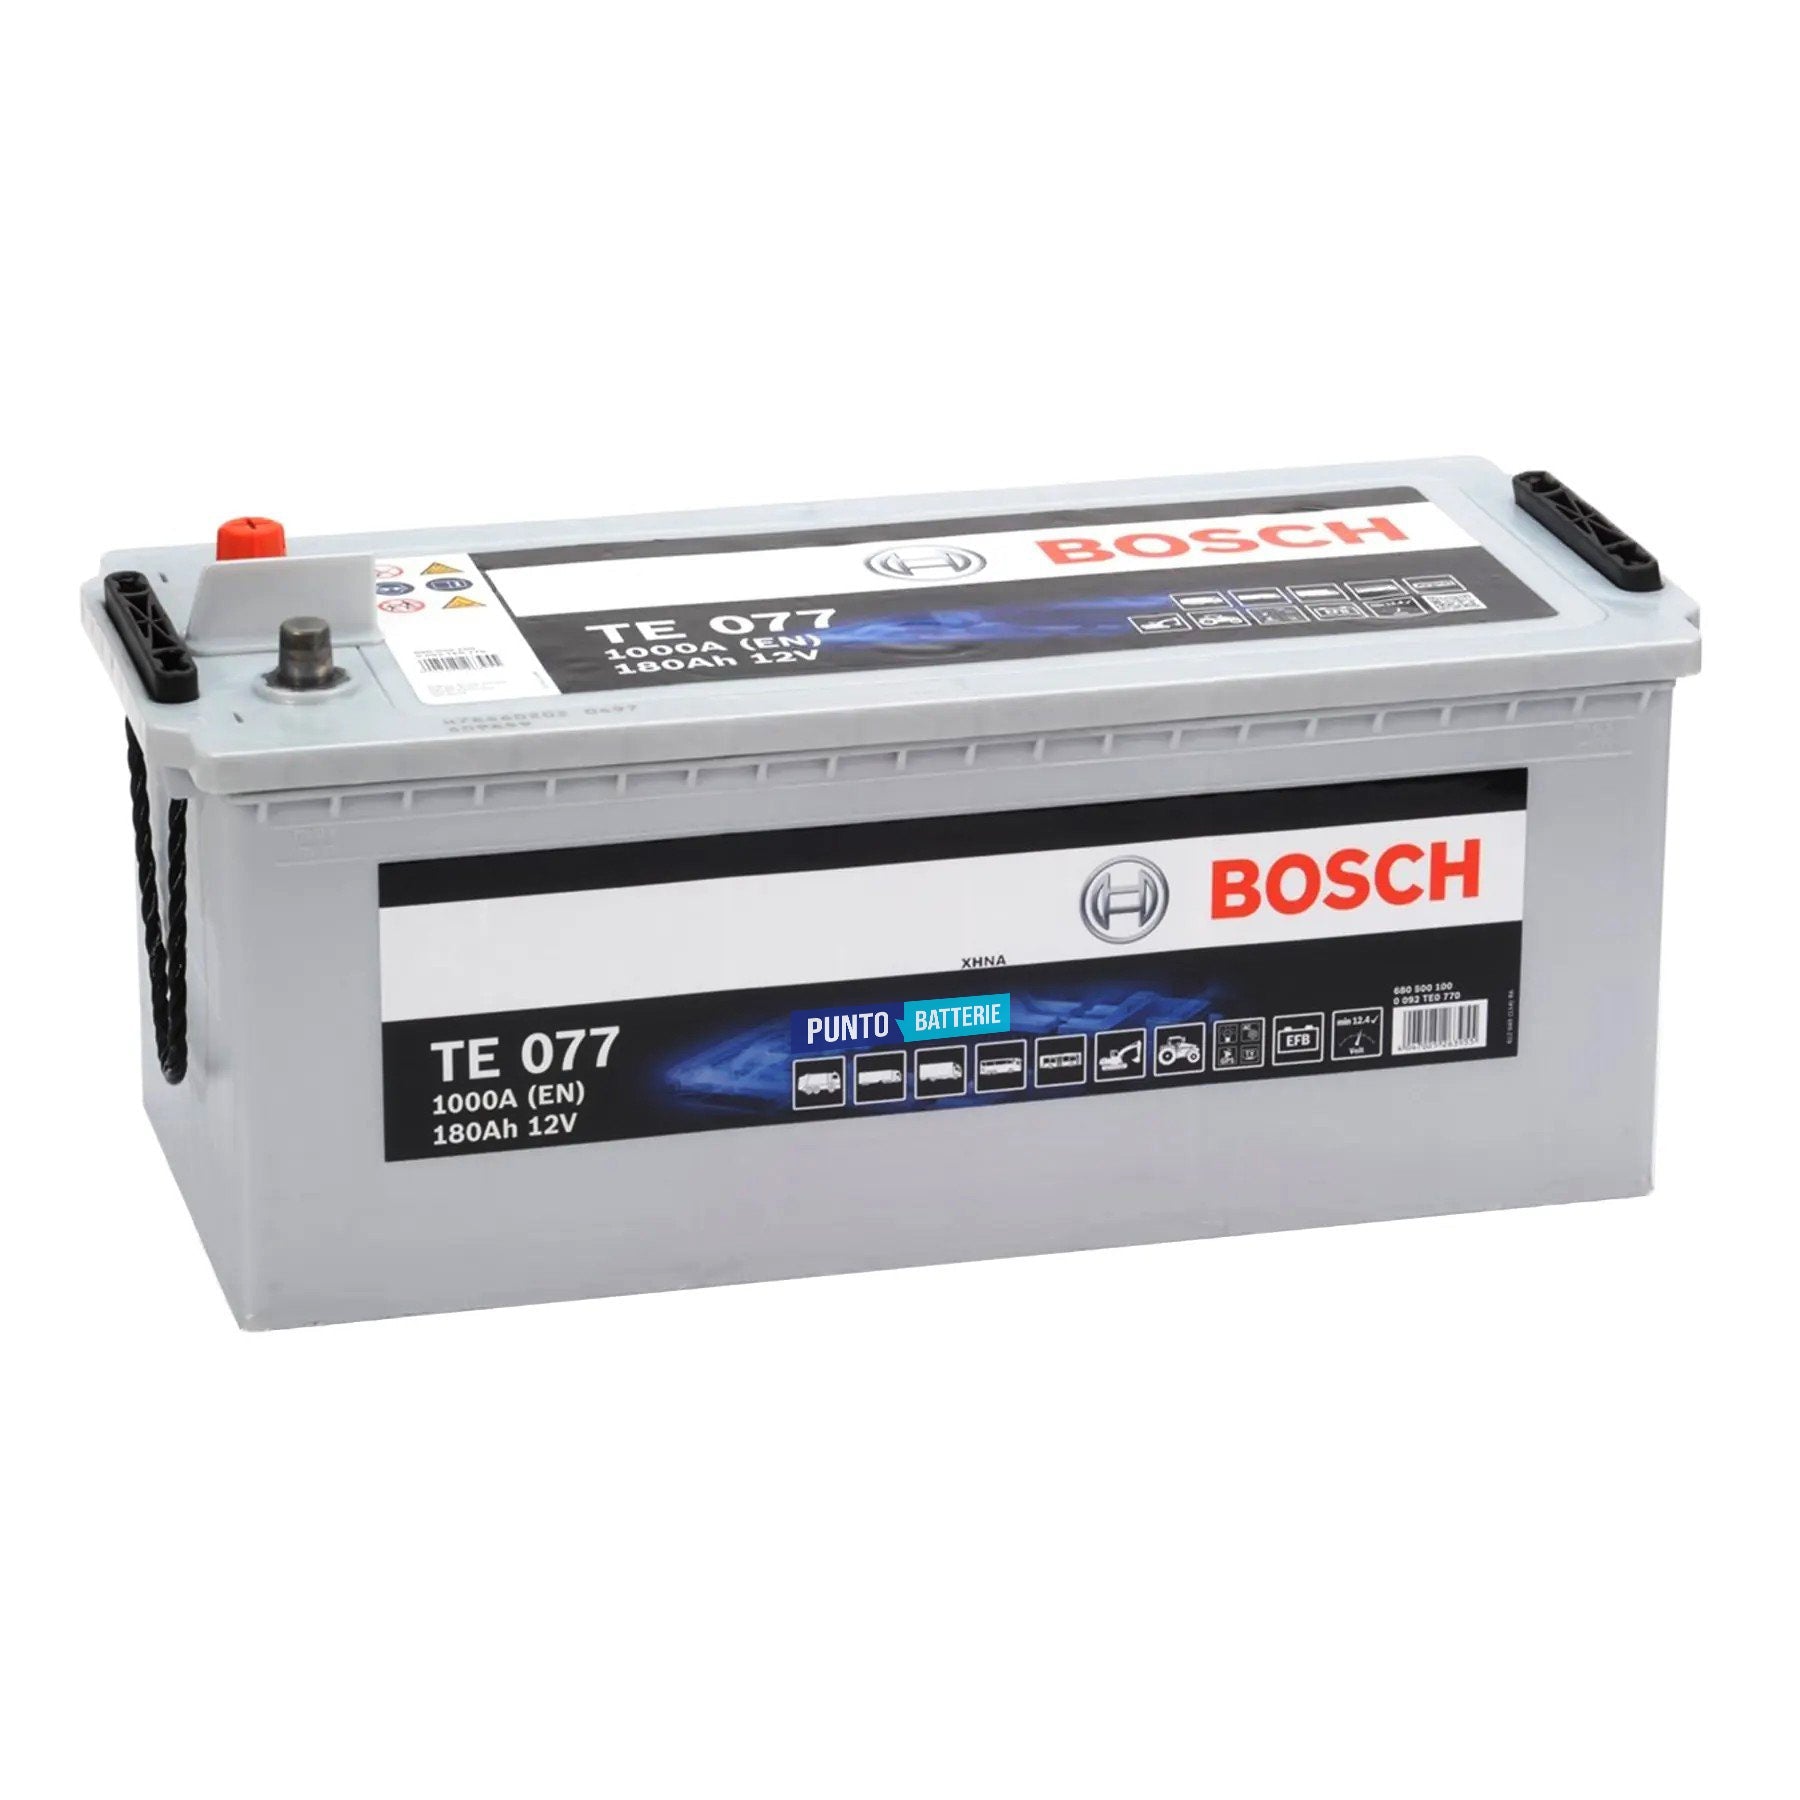 Batteria originale Bosch TE TE077, dimensioni 513 x 223 x 223, polo positivo a sinistra, 12 volt, 190 amperora, 1050 ampere, EFB. Batteria per camion e veicoli pesanti.